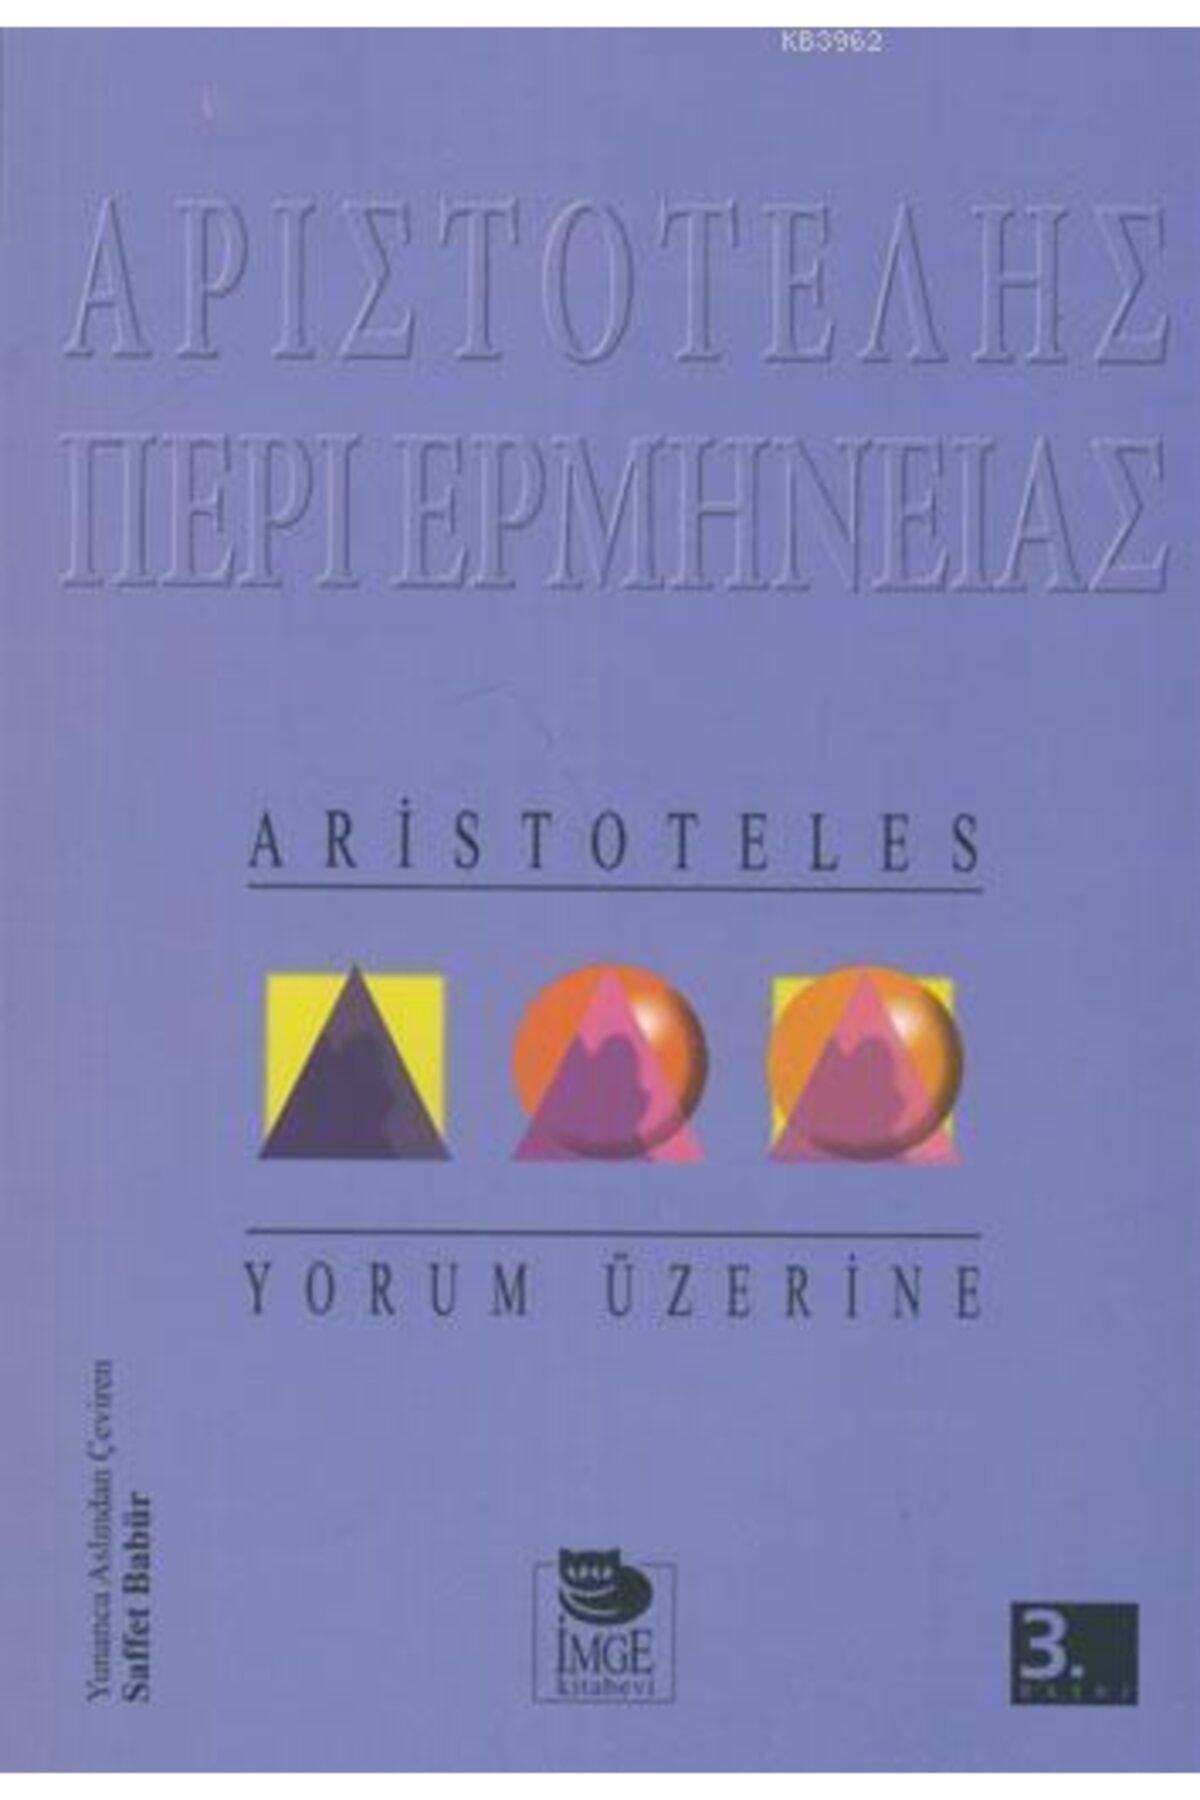 İmge Kitabevi Yayınları Yorum Üzerine Aristoteles (aristo)